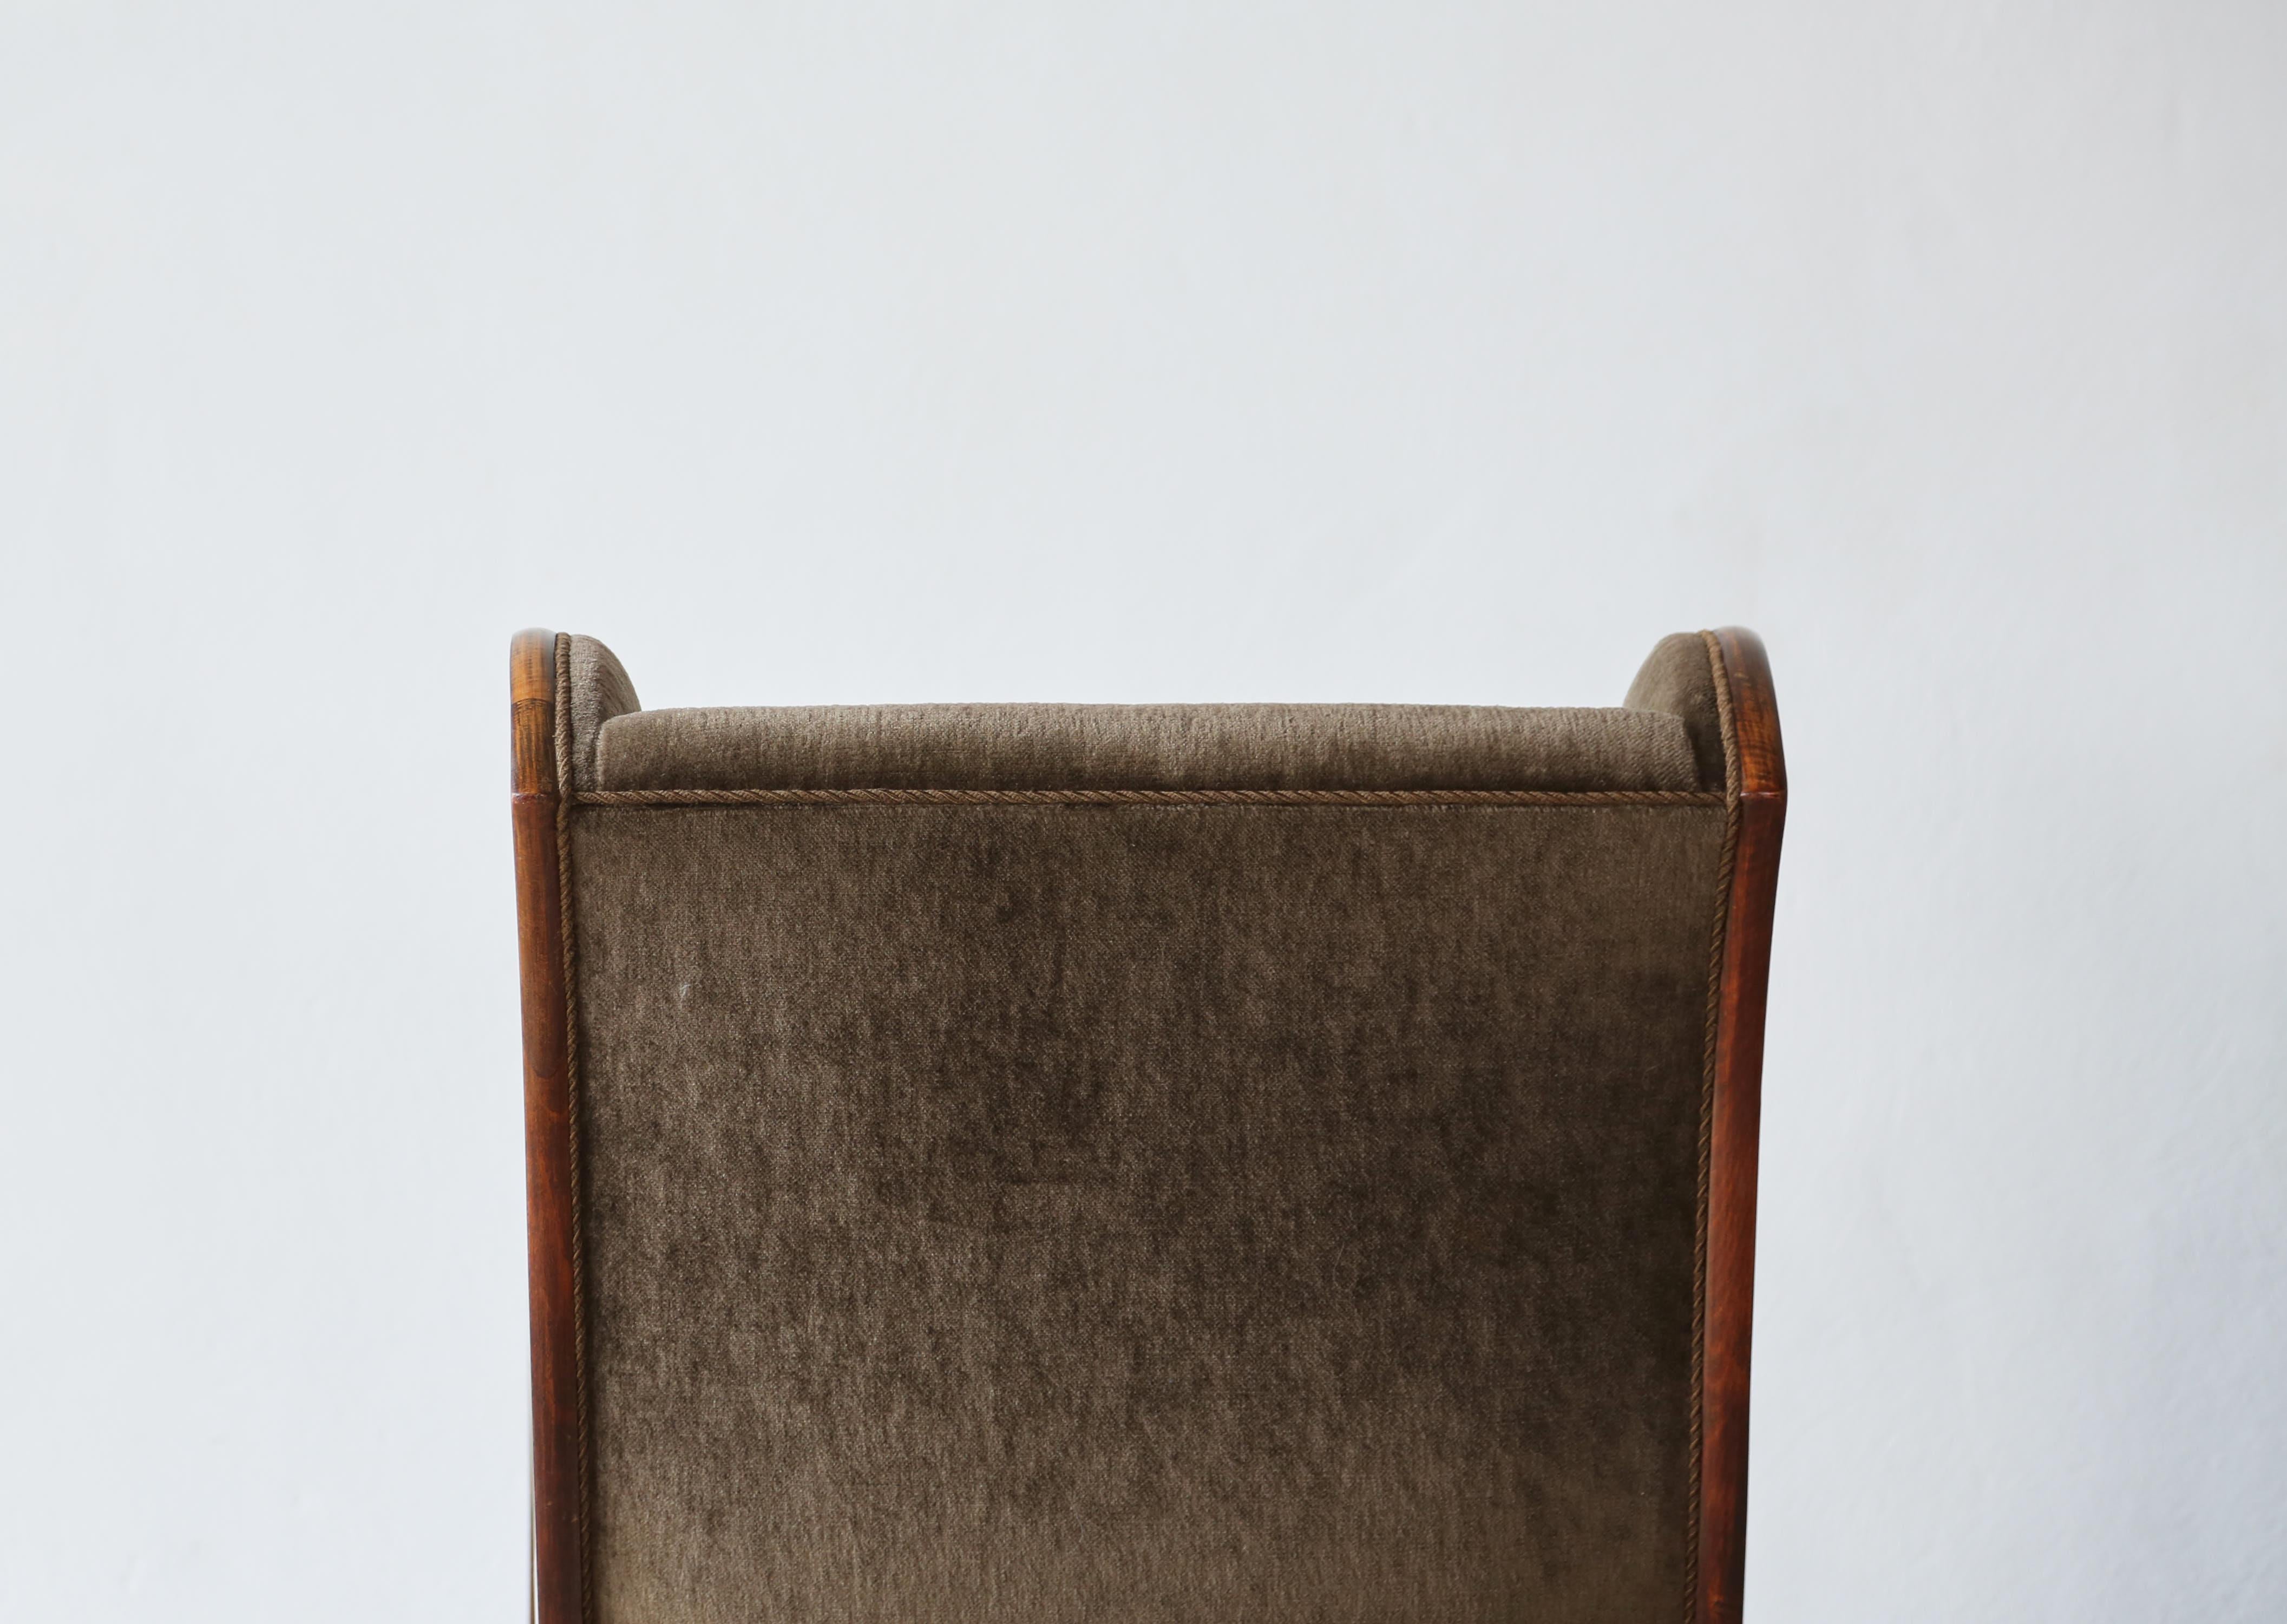 Frits Henningsen Chairs, Denmark, 1940s For Sale 1